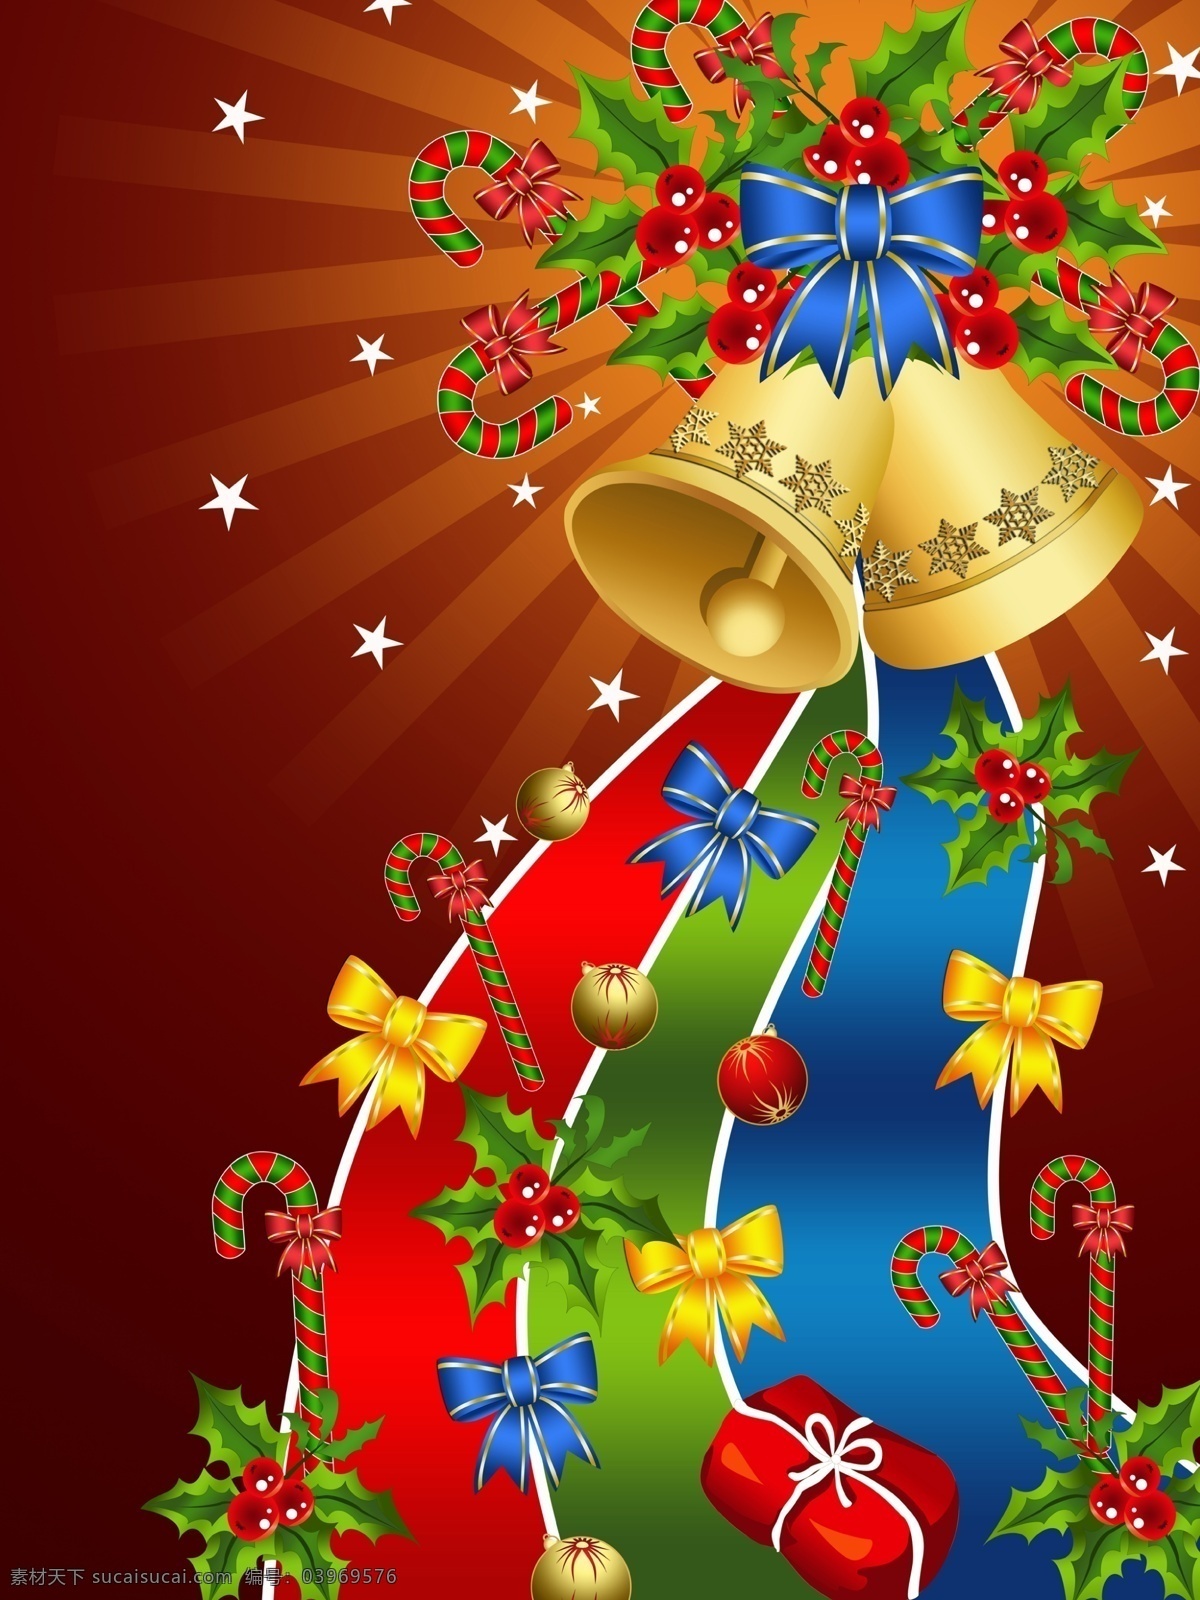 精美 圣诞贺卡 绚丽 矢量图 彩带 铃铛 圣诞吊球 圣诞节 节日彩球 彩结图片素材 节日素材